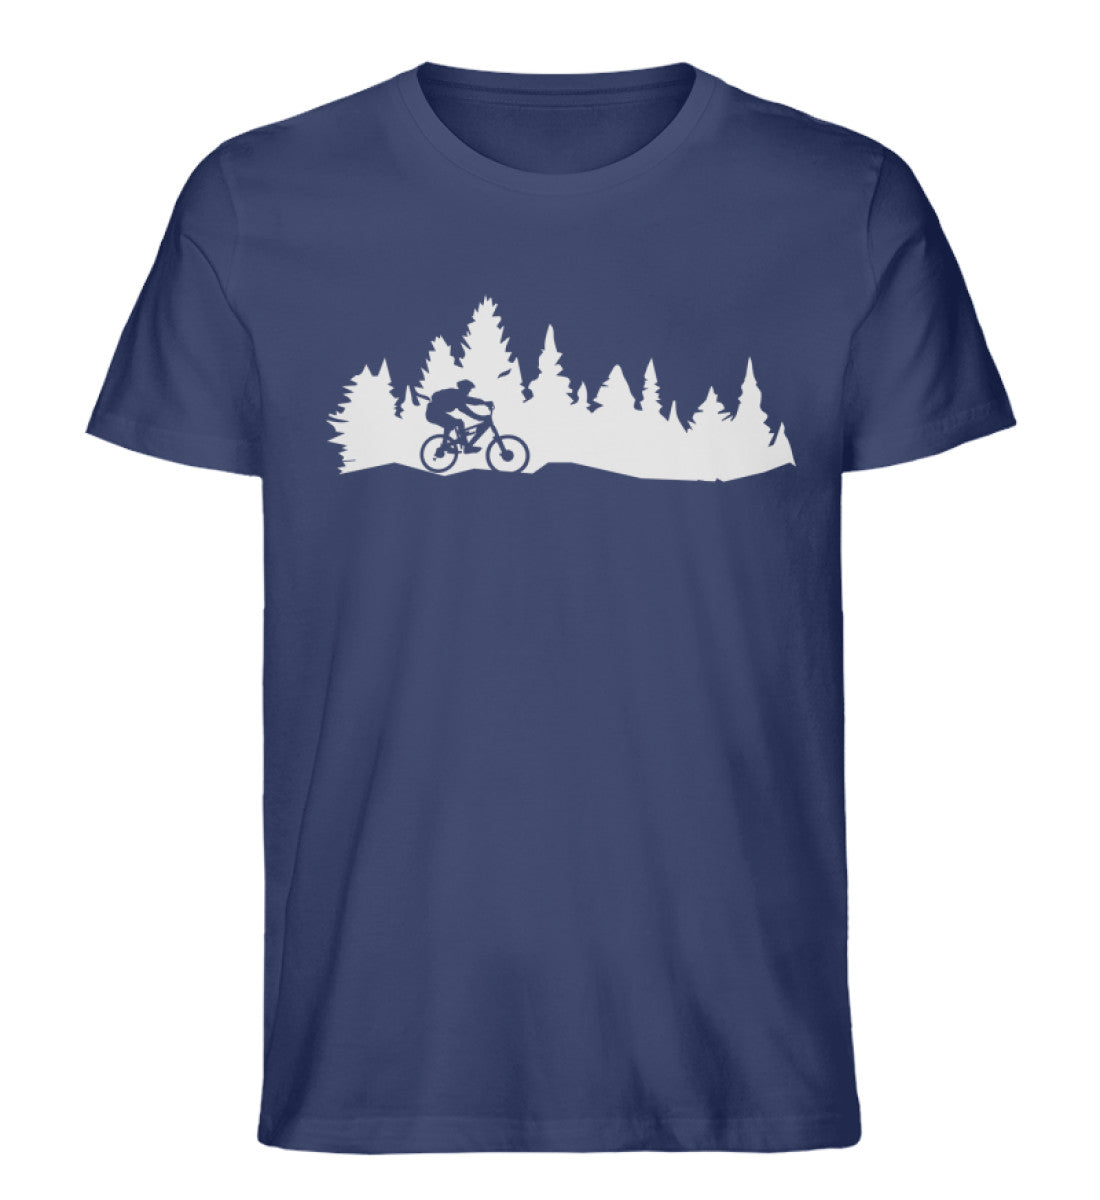 Mountainbiken und Landschaft - Herren Organic T-Shirt mountainbike Navyblau